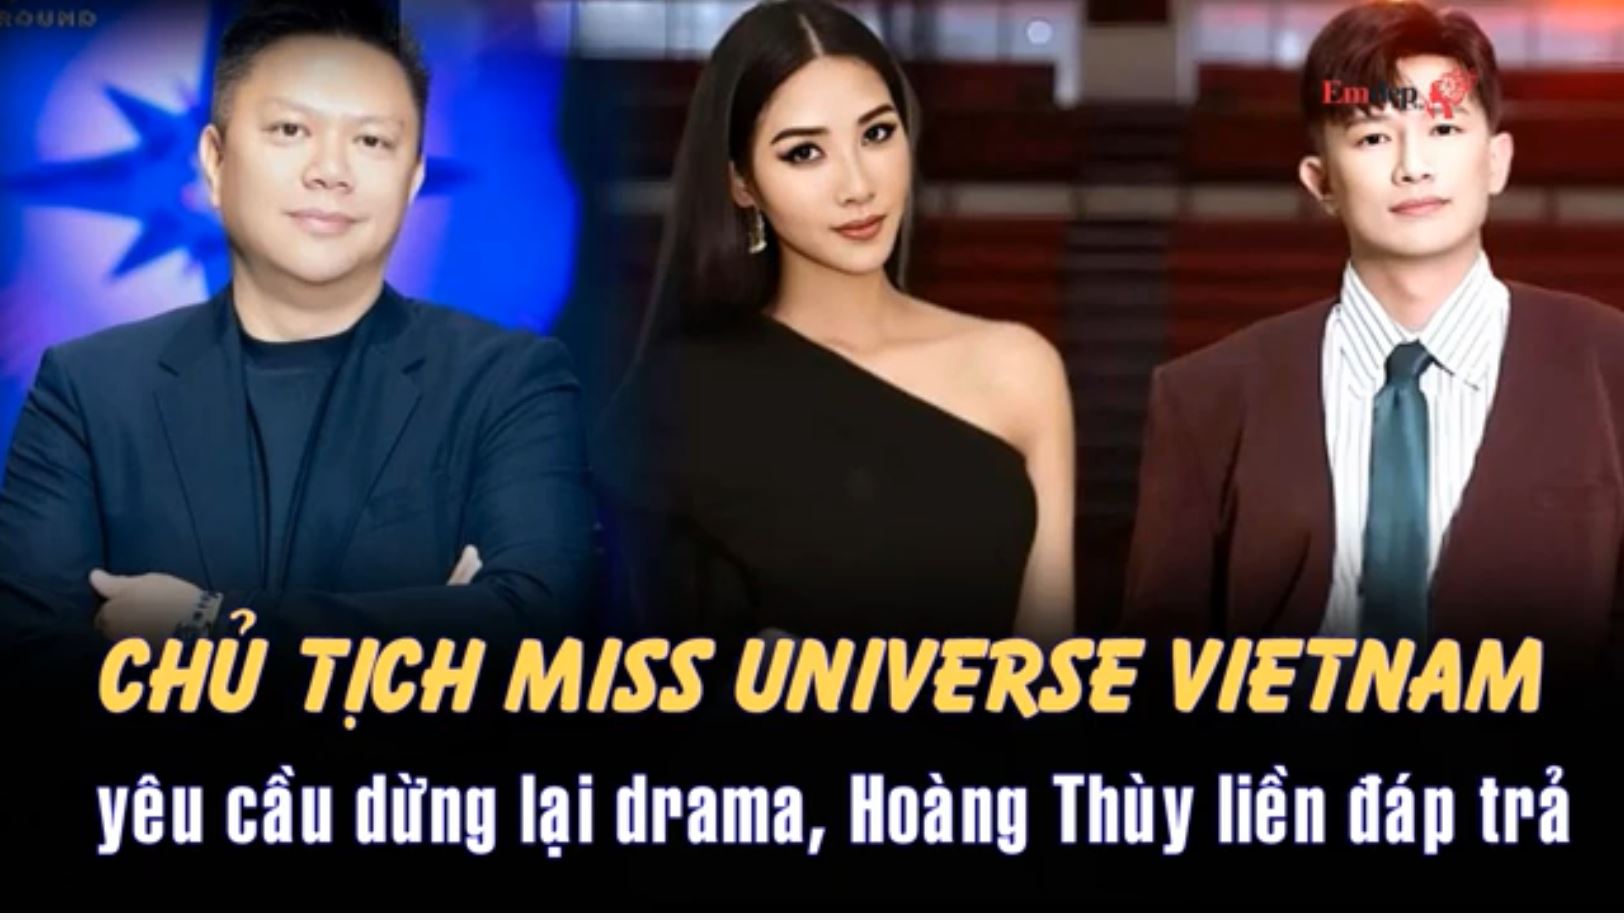 Chủ tịch Miss Universe Vietnam yêu cầu dừng lại drama, Hoàng Thùy liền đáp trả